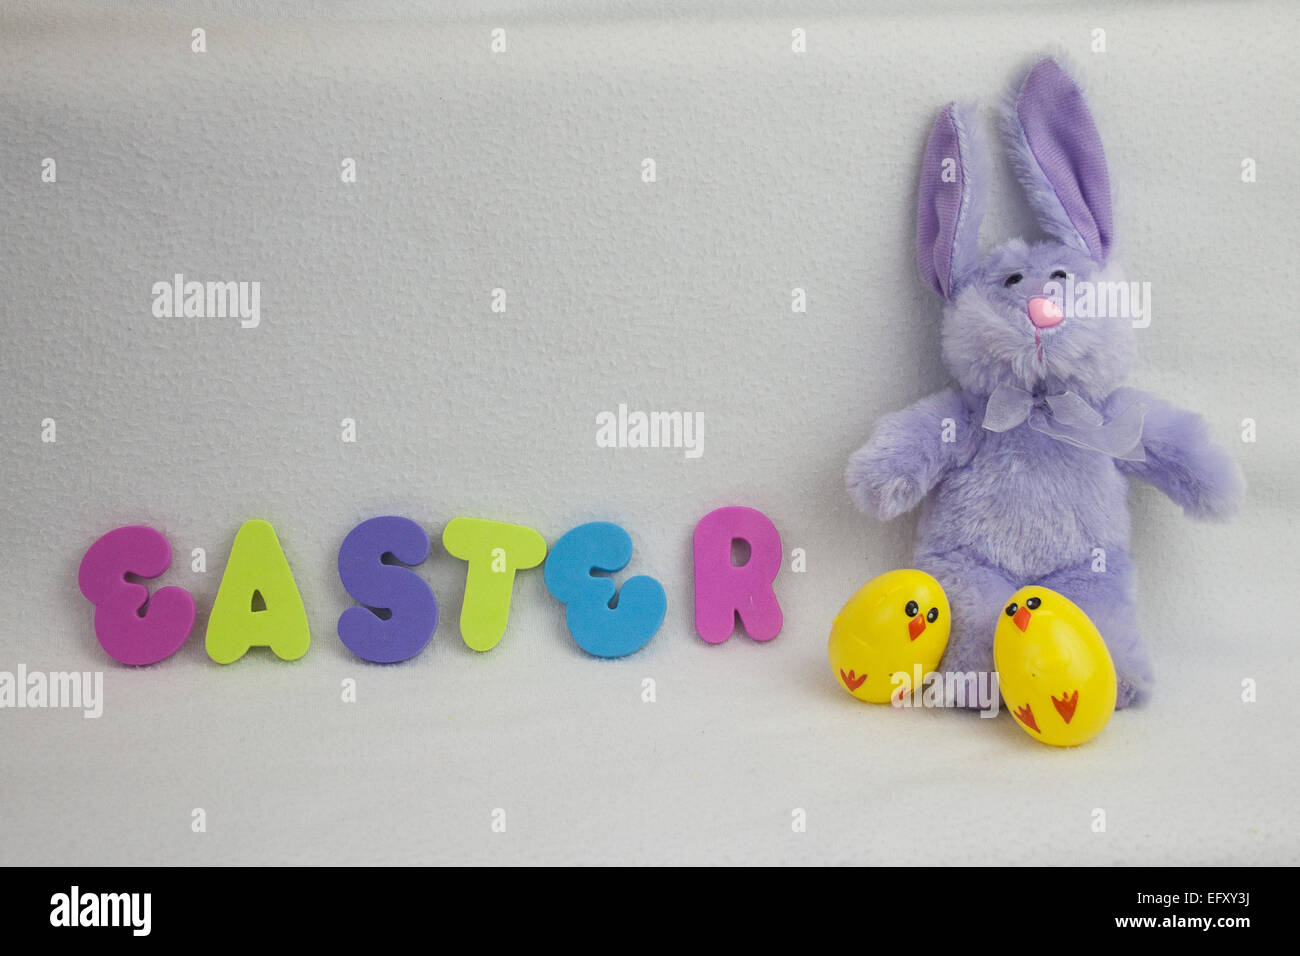 Colorate immagine di Pasqua e il tema con la Pasqua è enunciato nelle lettere di schiuma, con bunny e uova Foto Stock